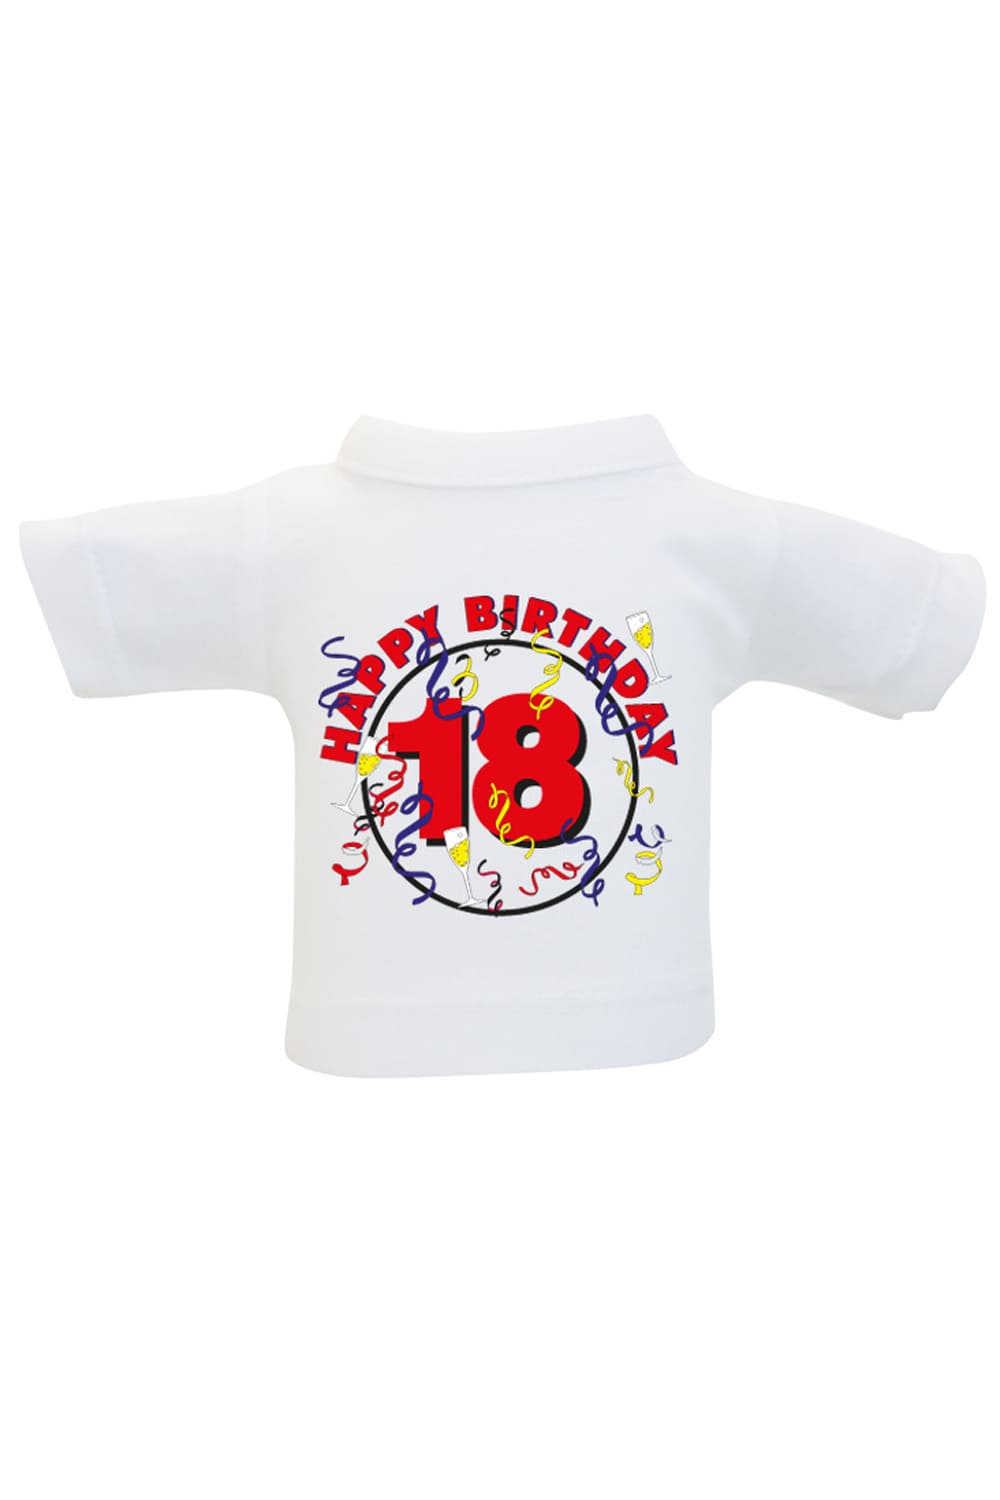 Das Mini T-Shirt ist ein lustiges Accessoire fuer Plueschtiere, Geschenke und Flaschen. Einfach das Mini Shirt einer Weinflasche oder einem Teddy anziehen und fertig ist die originelle Geschenkverpackung. Kleines Spruchshirt mit der Aufschrift: Happy Birthday 18. 